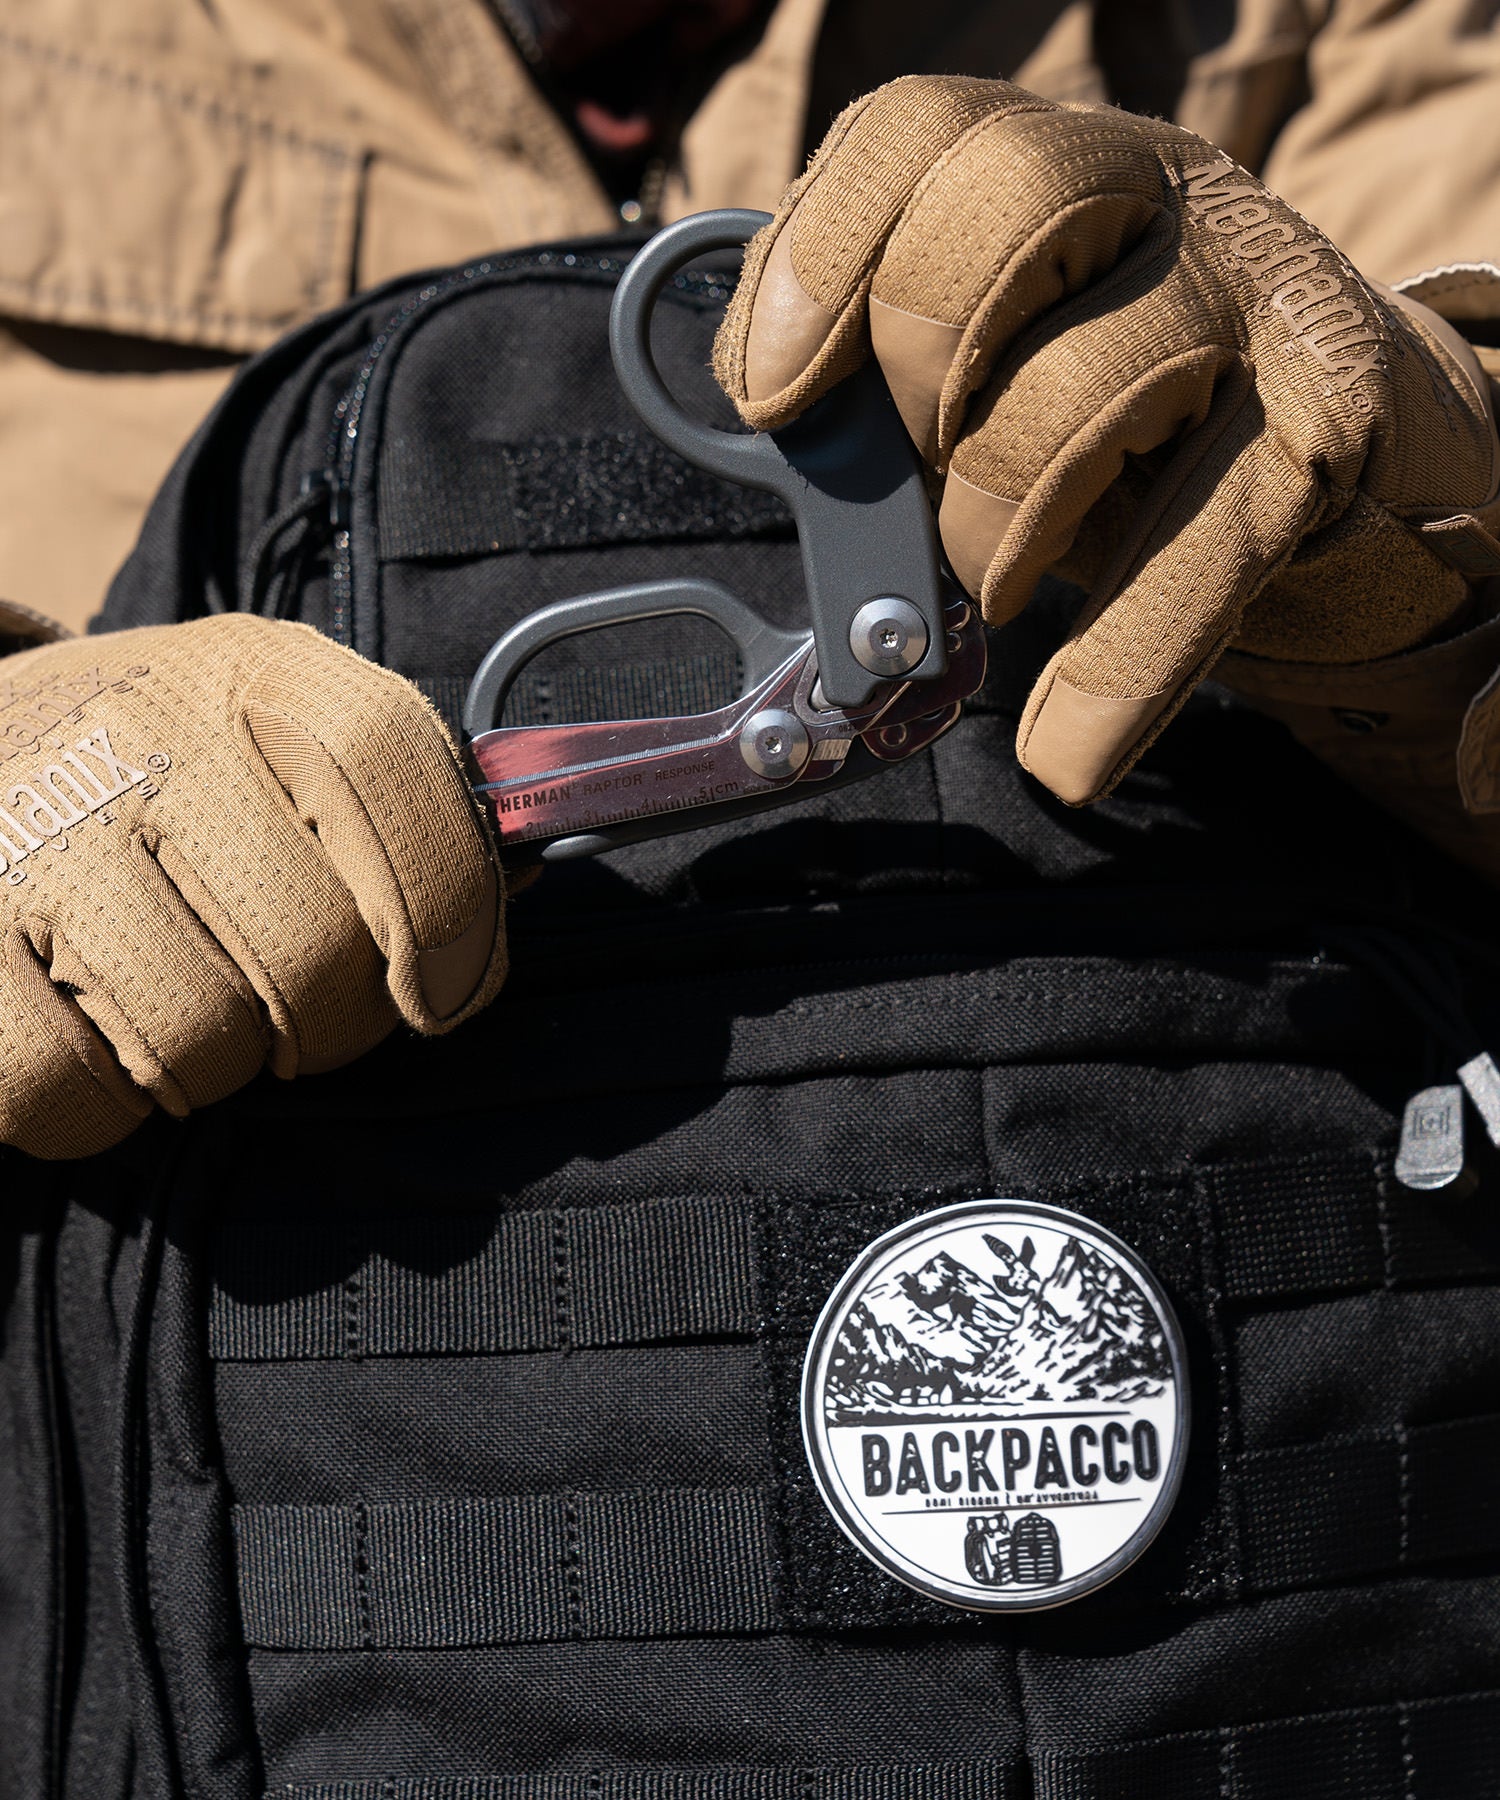 Paolo di backpacco apre le forbici Leatherman Raptor Response grige con i guanti mechanix